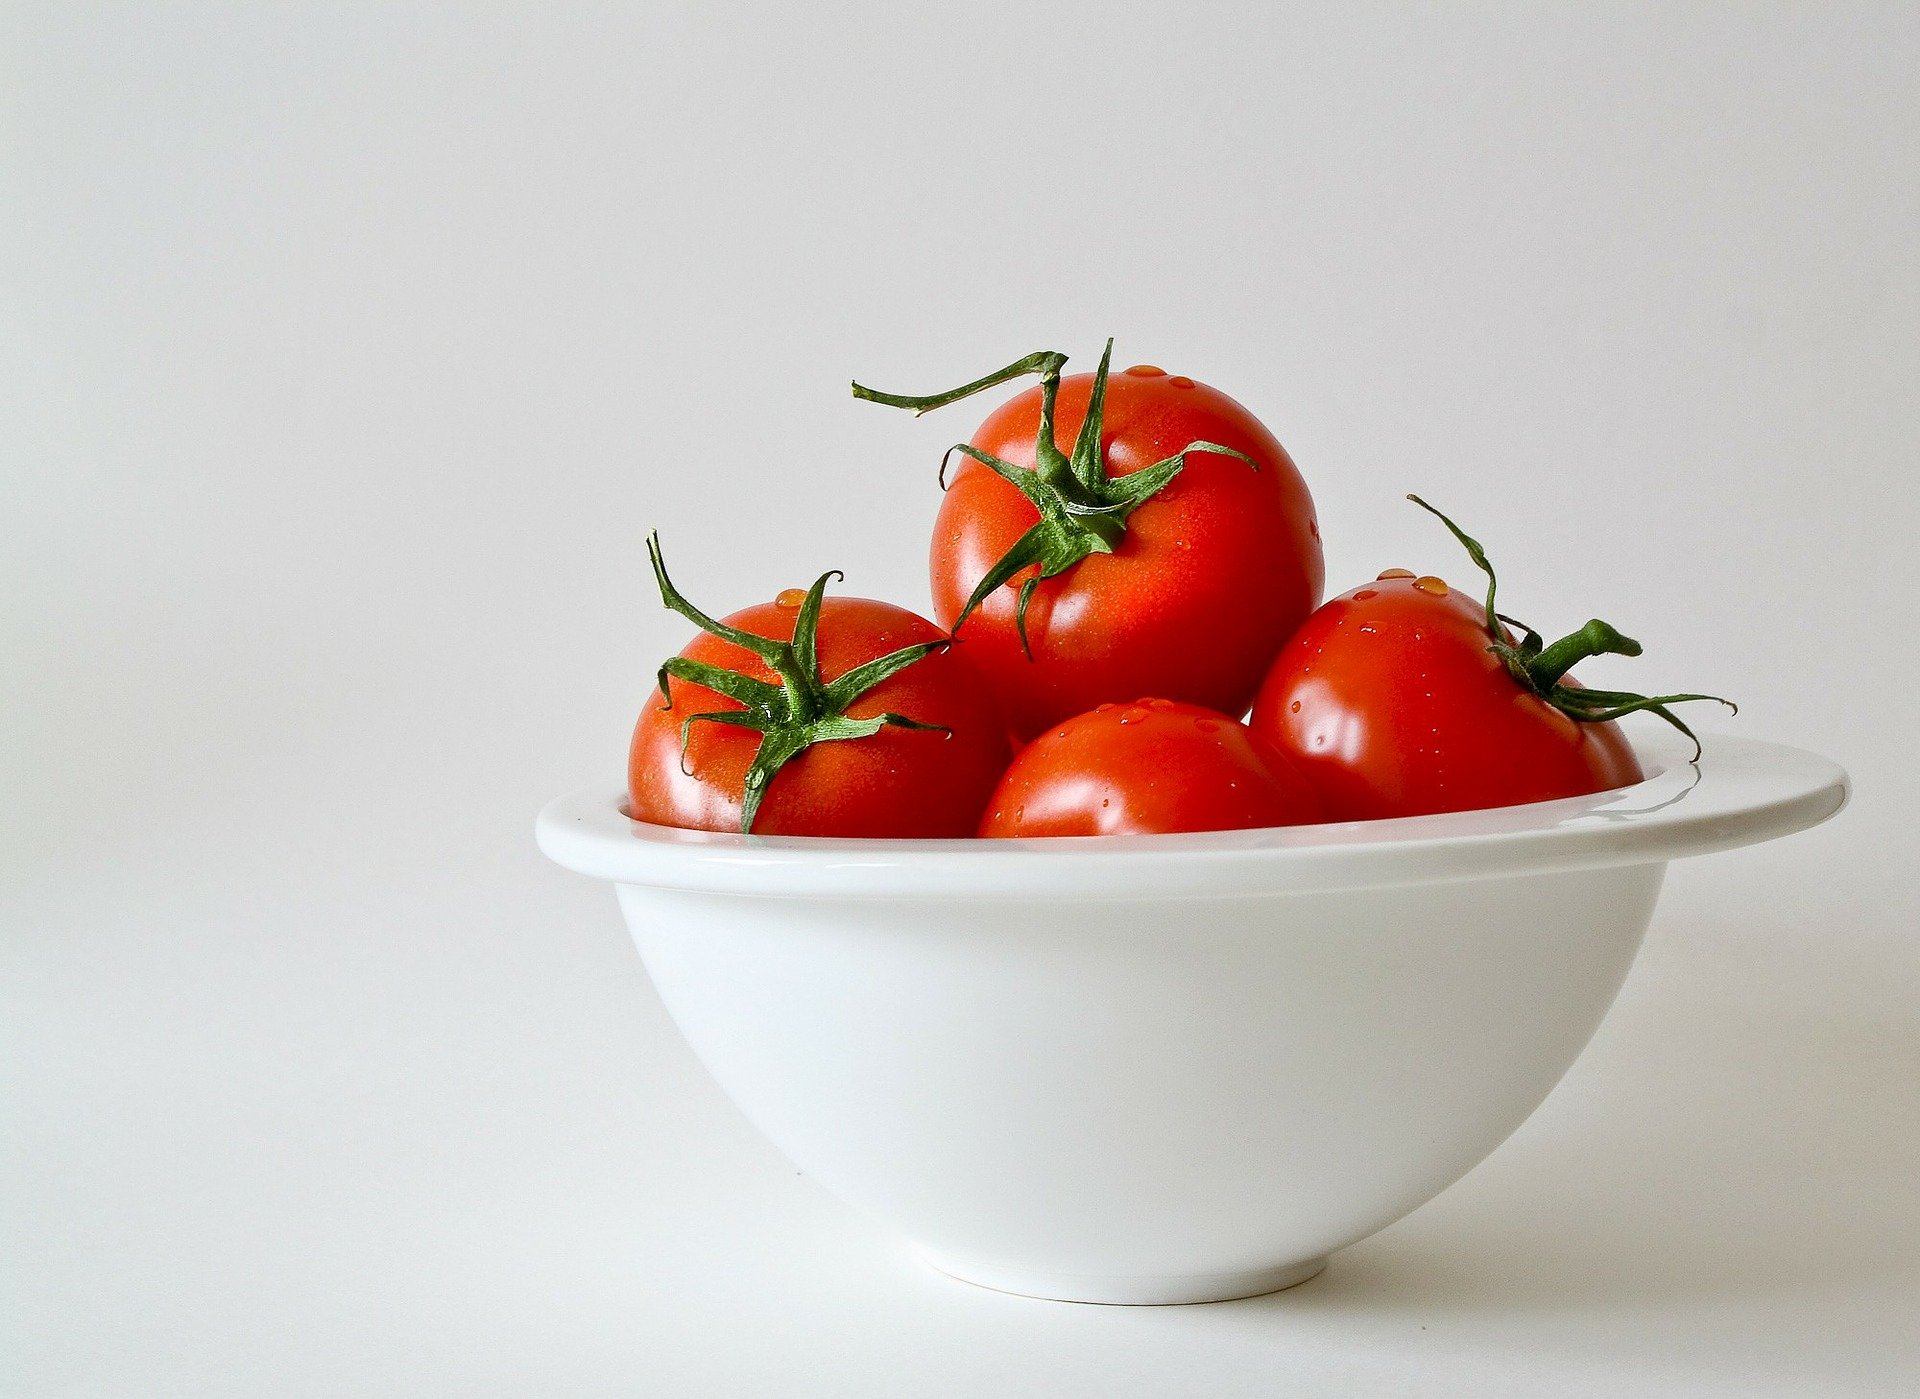 حماية القلب والشرايين والوقاية من السرطان .. فوائد لا تتوقعها للطماطم